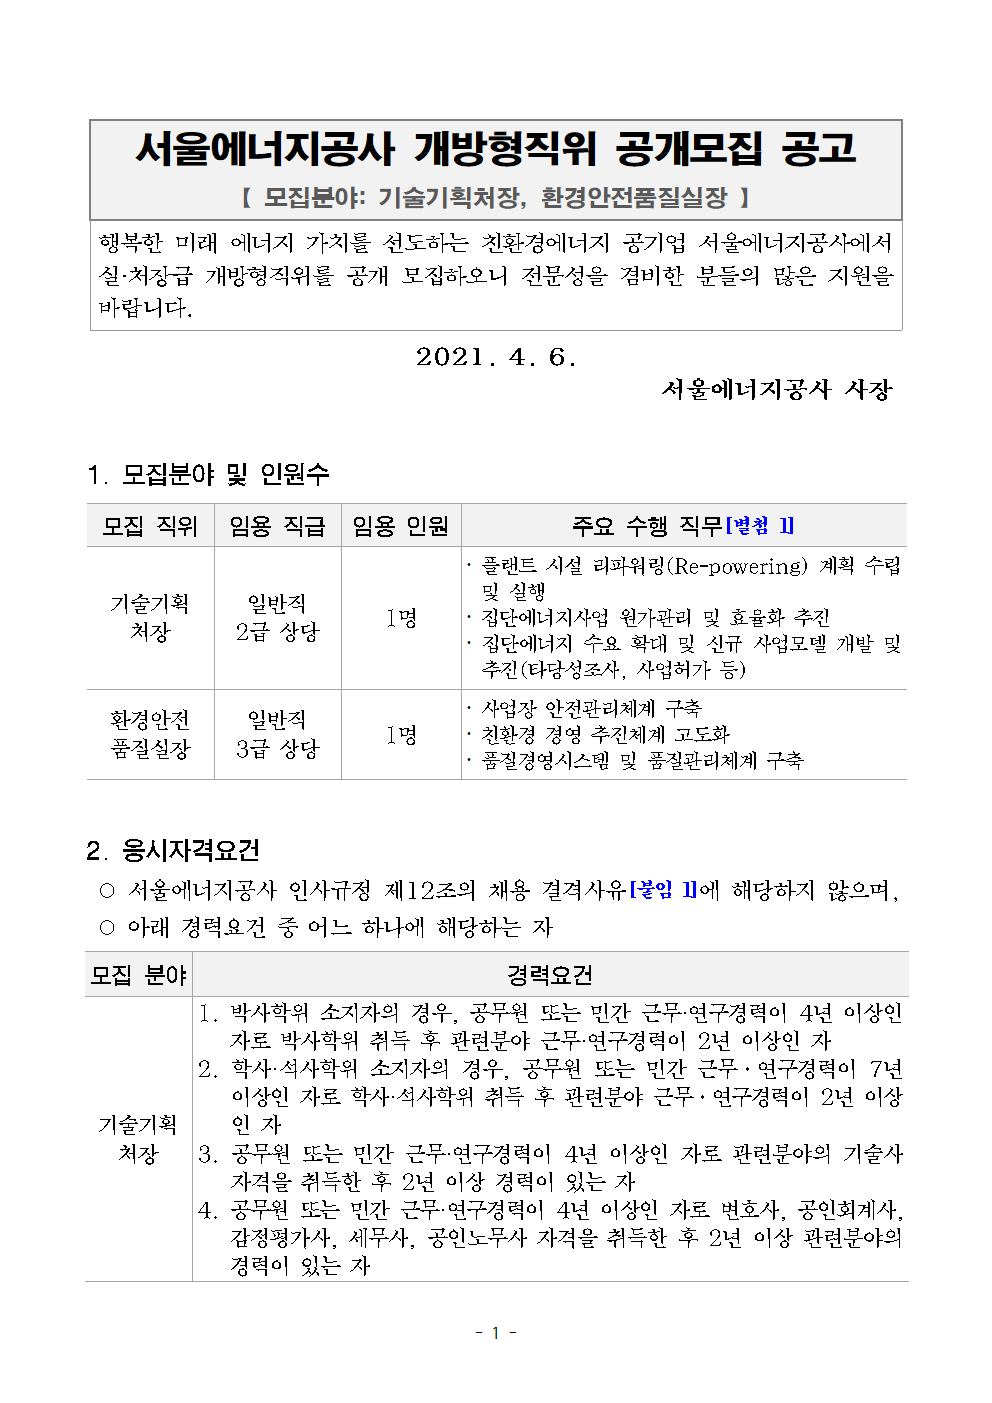 서울에너지공사 개방형직위 공개모집 공고문001 